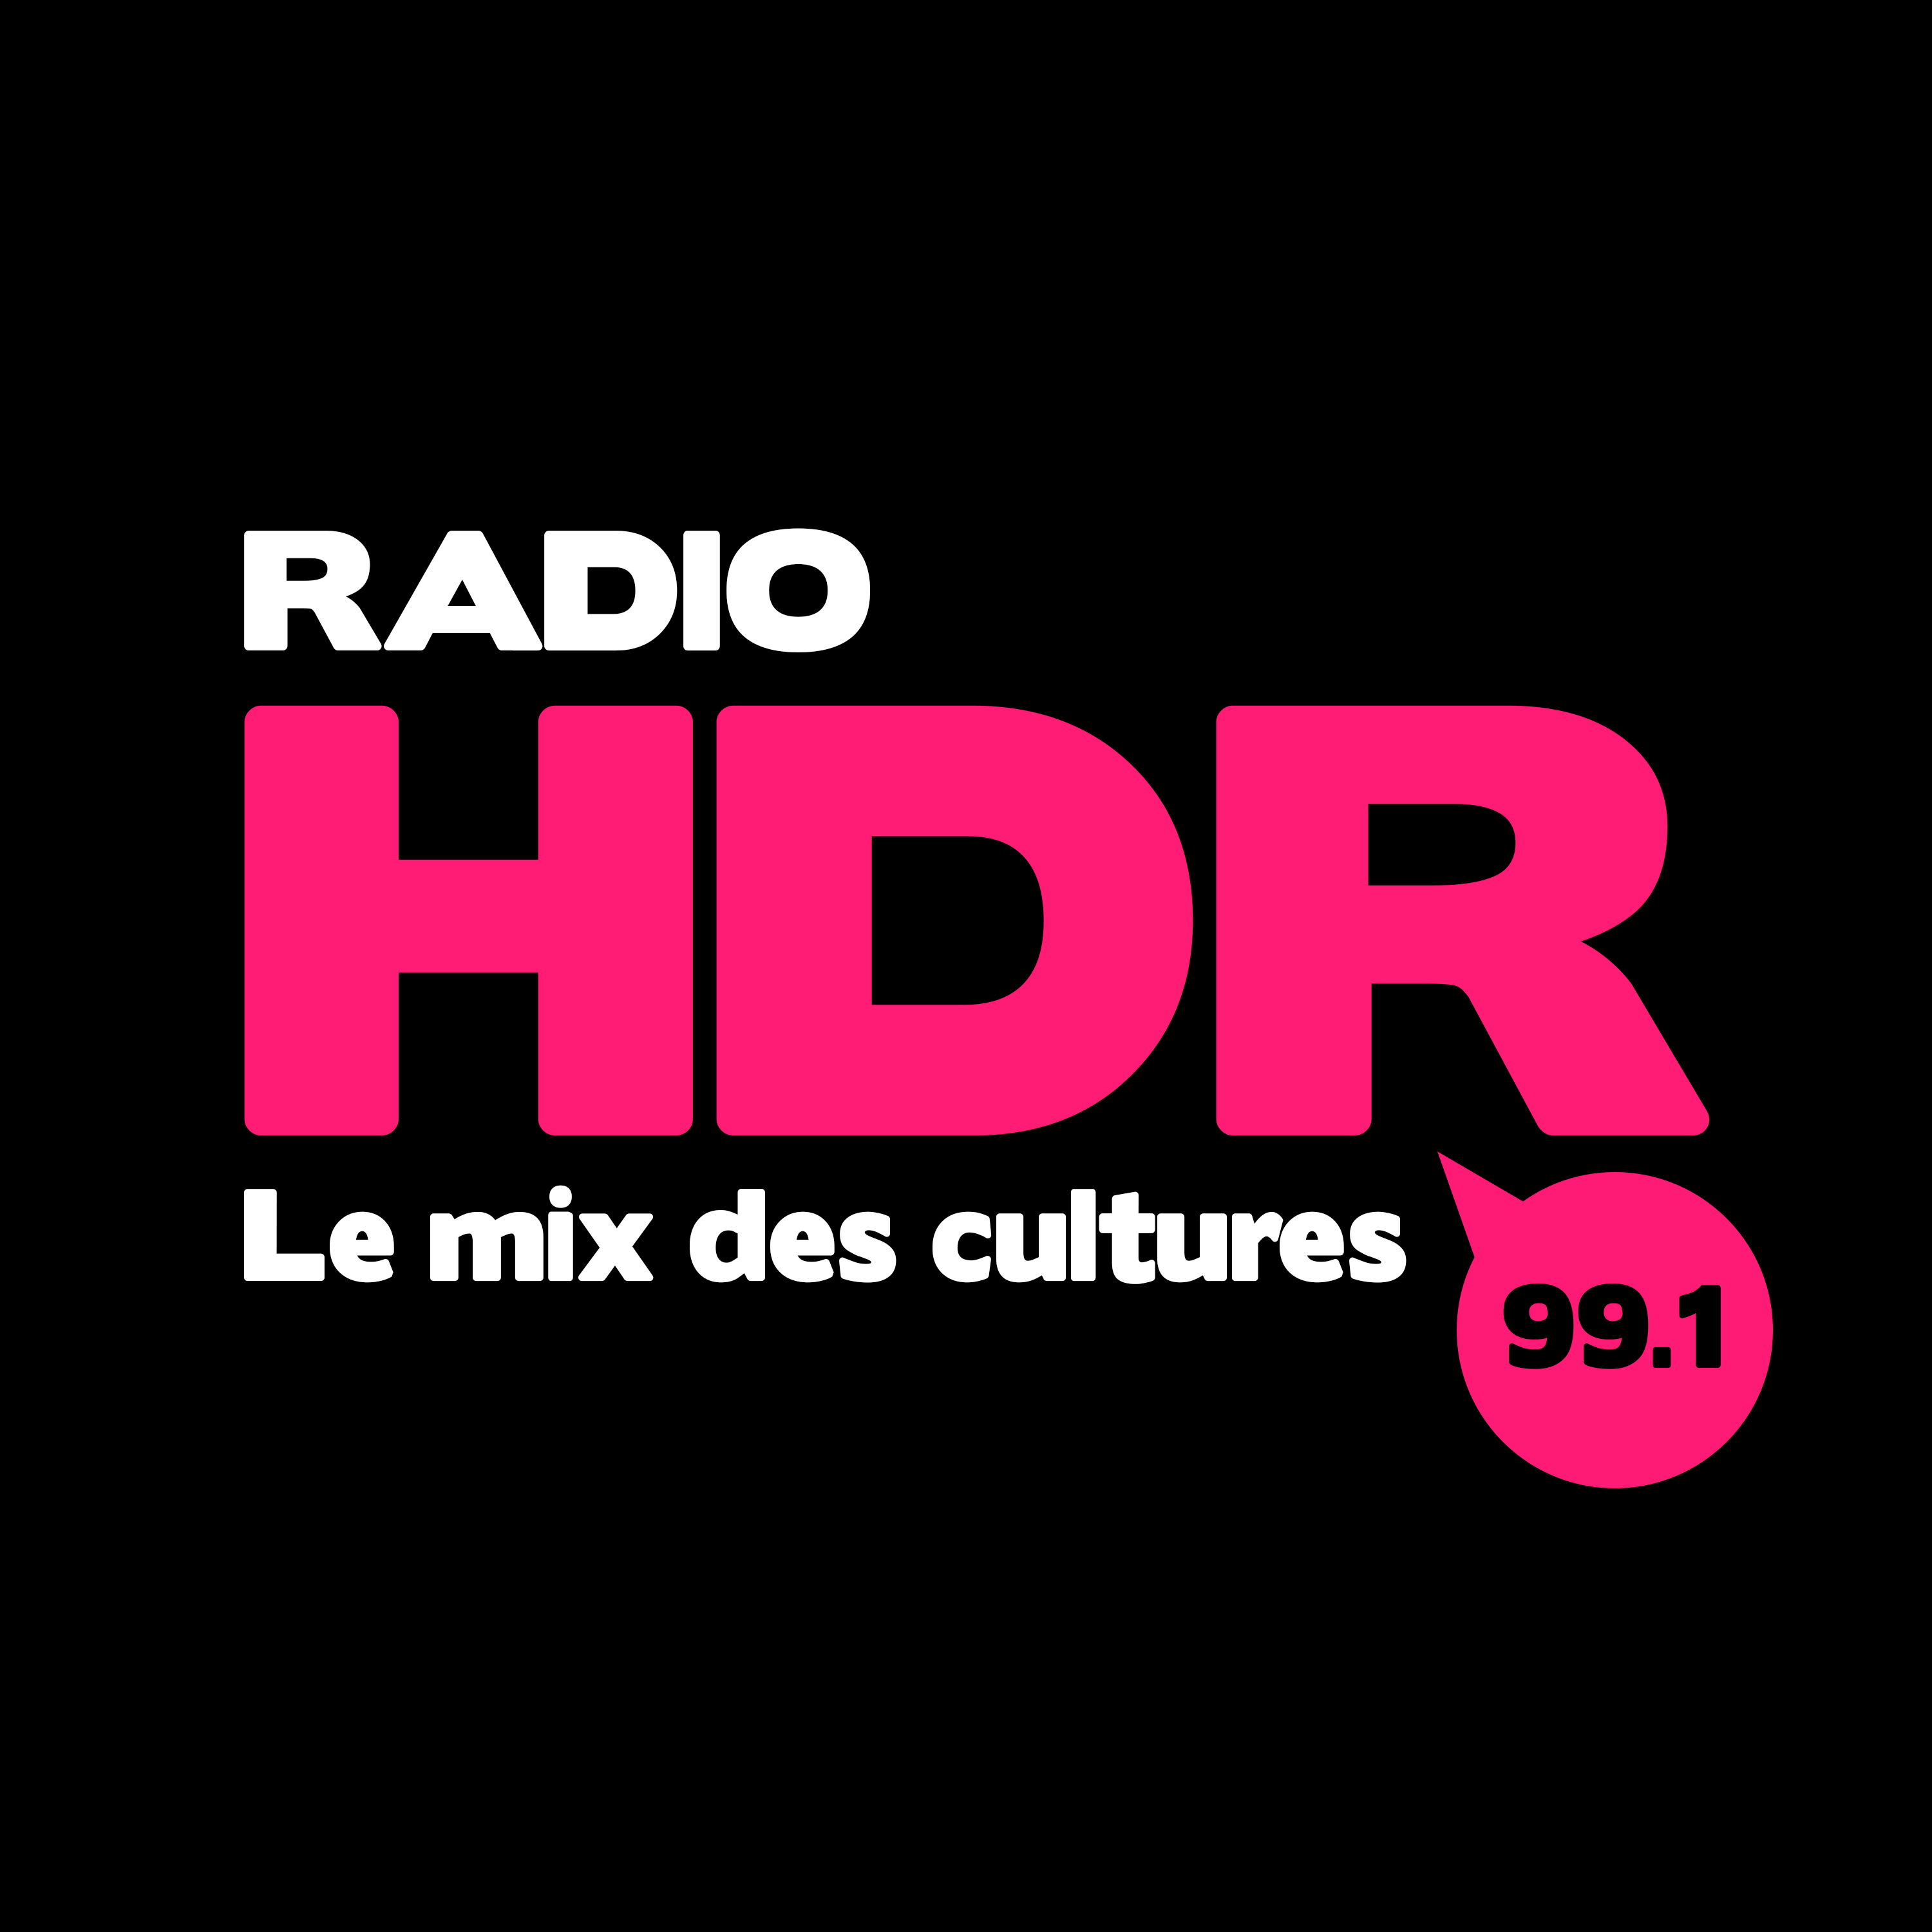 RADIO HDR